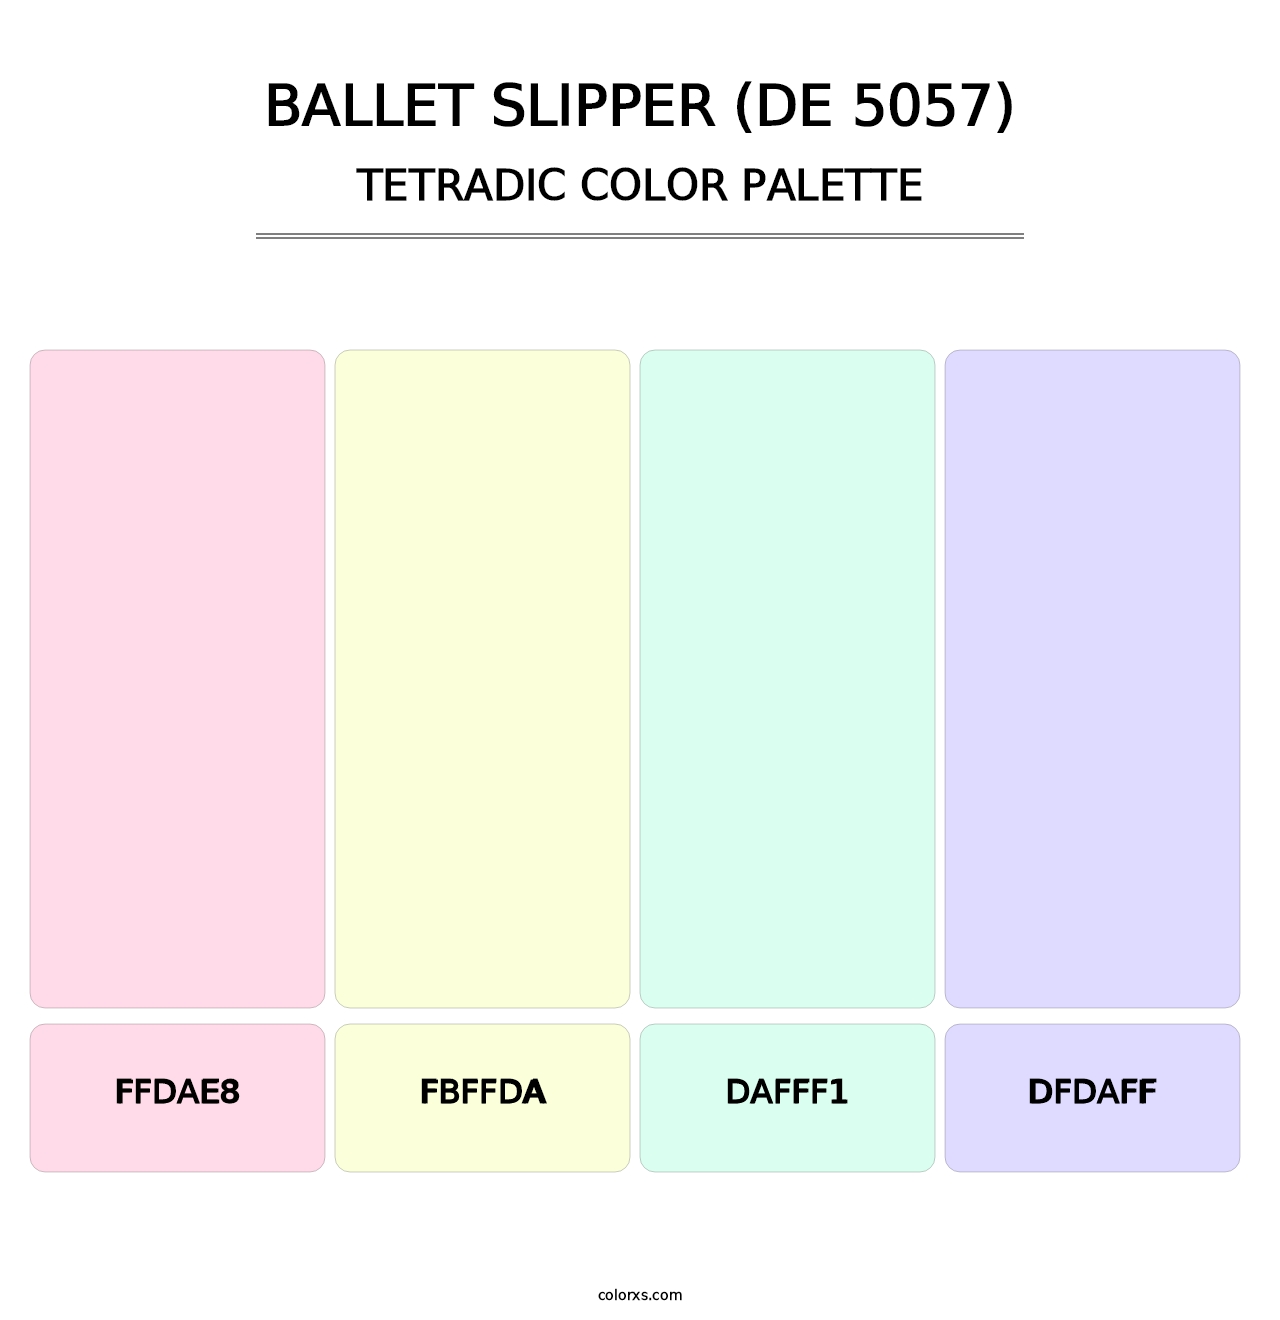 Ballet Slipper (DE 5057) - Tetradic Color Palette